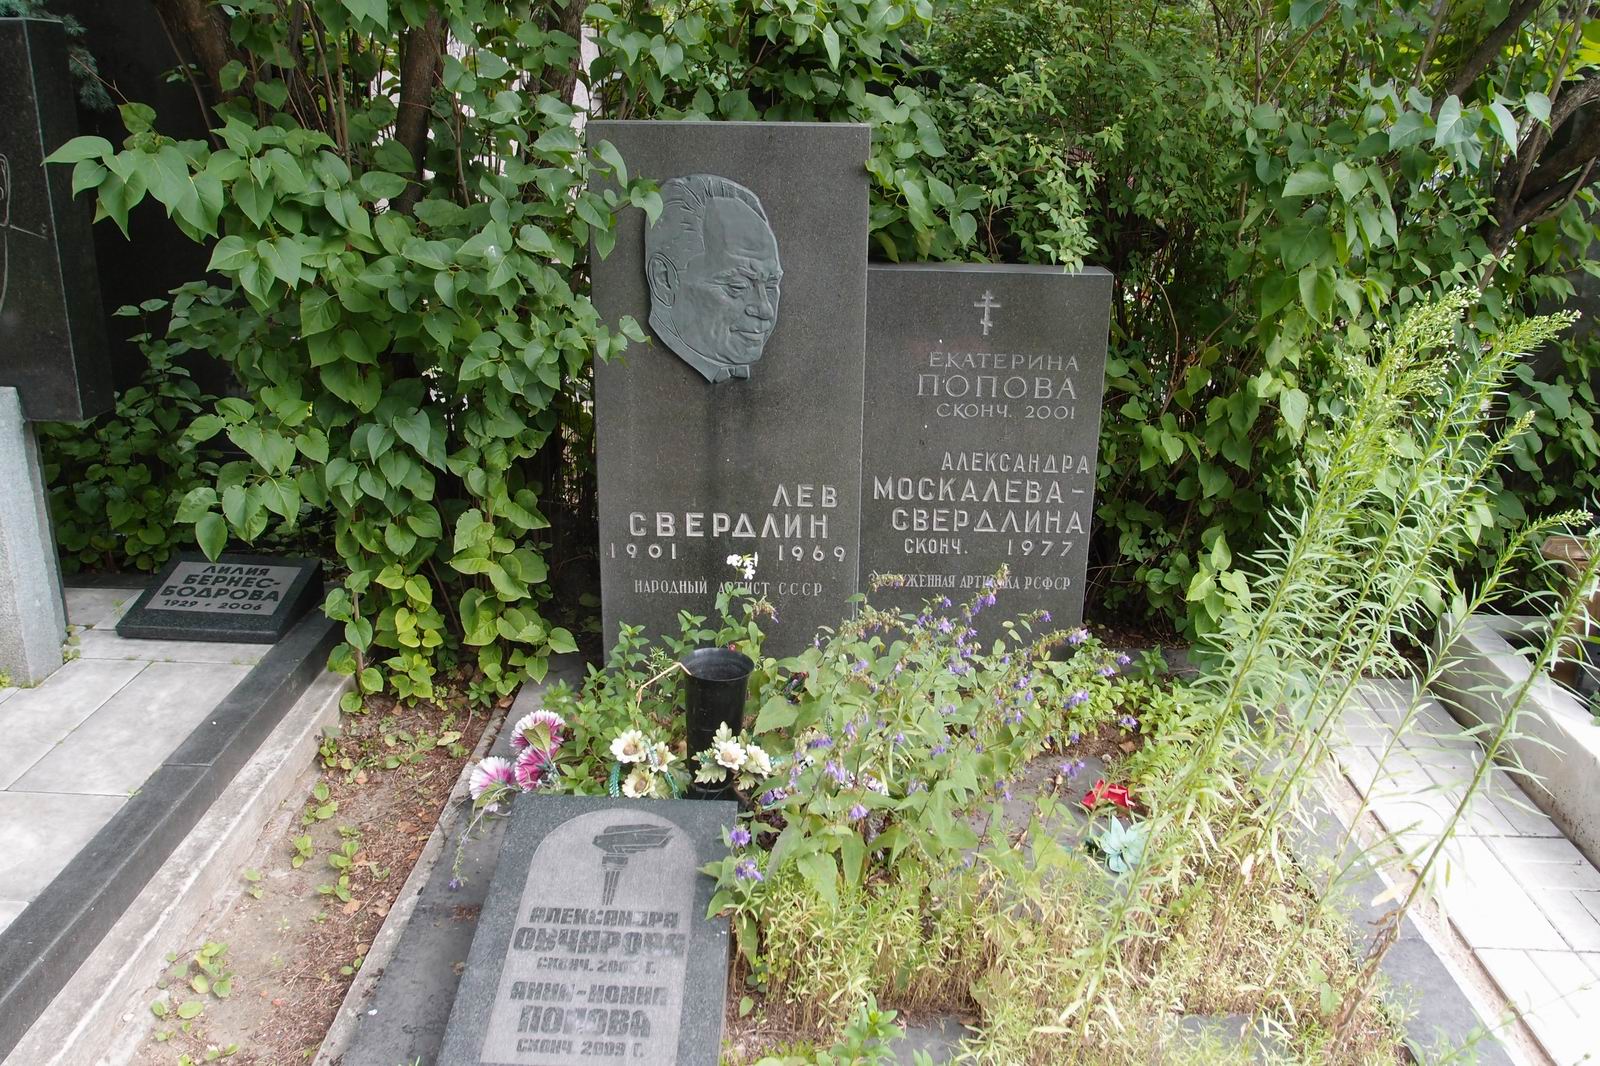 Памятник на могиле Свердлина Л.Н. (1901–1969), на Новодевичьем кладбище (7–8–10). Нажмите левую кнопку мыши чтобы увидеть фрагмент памятника.